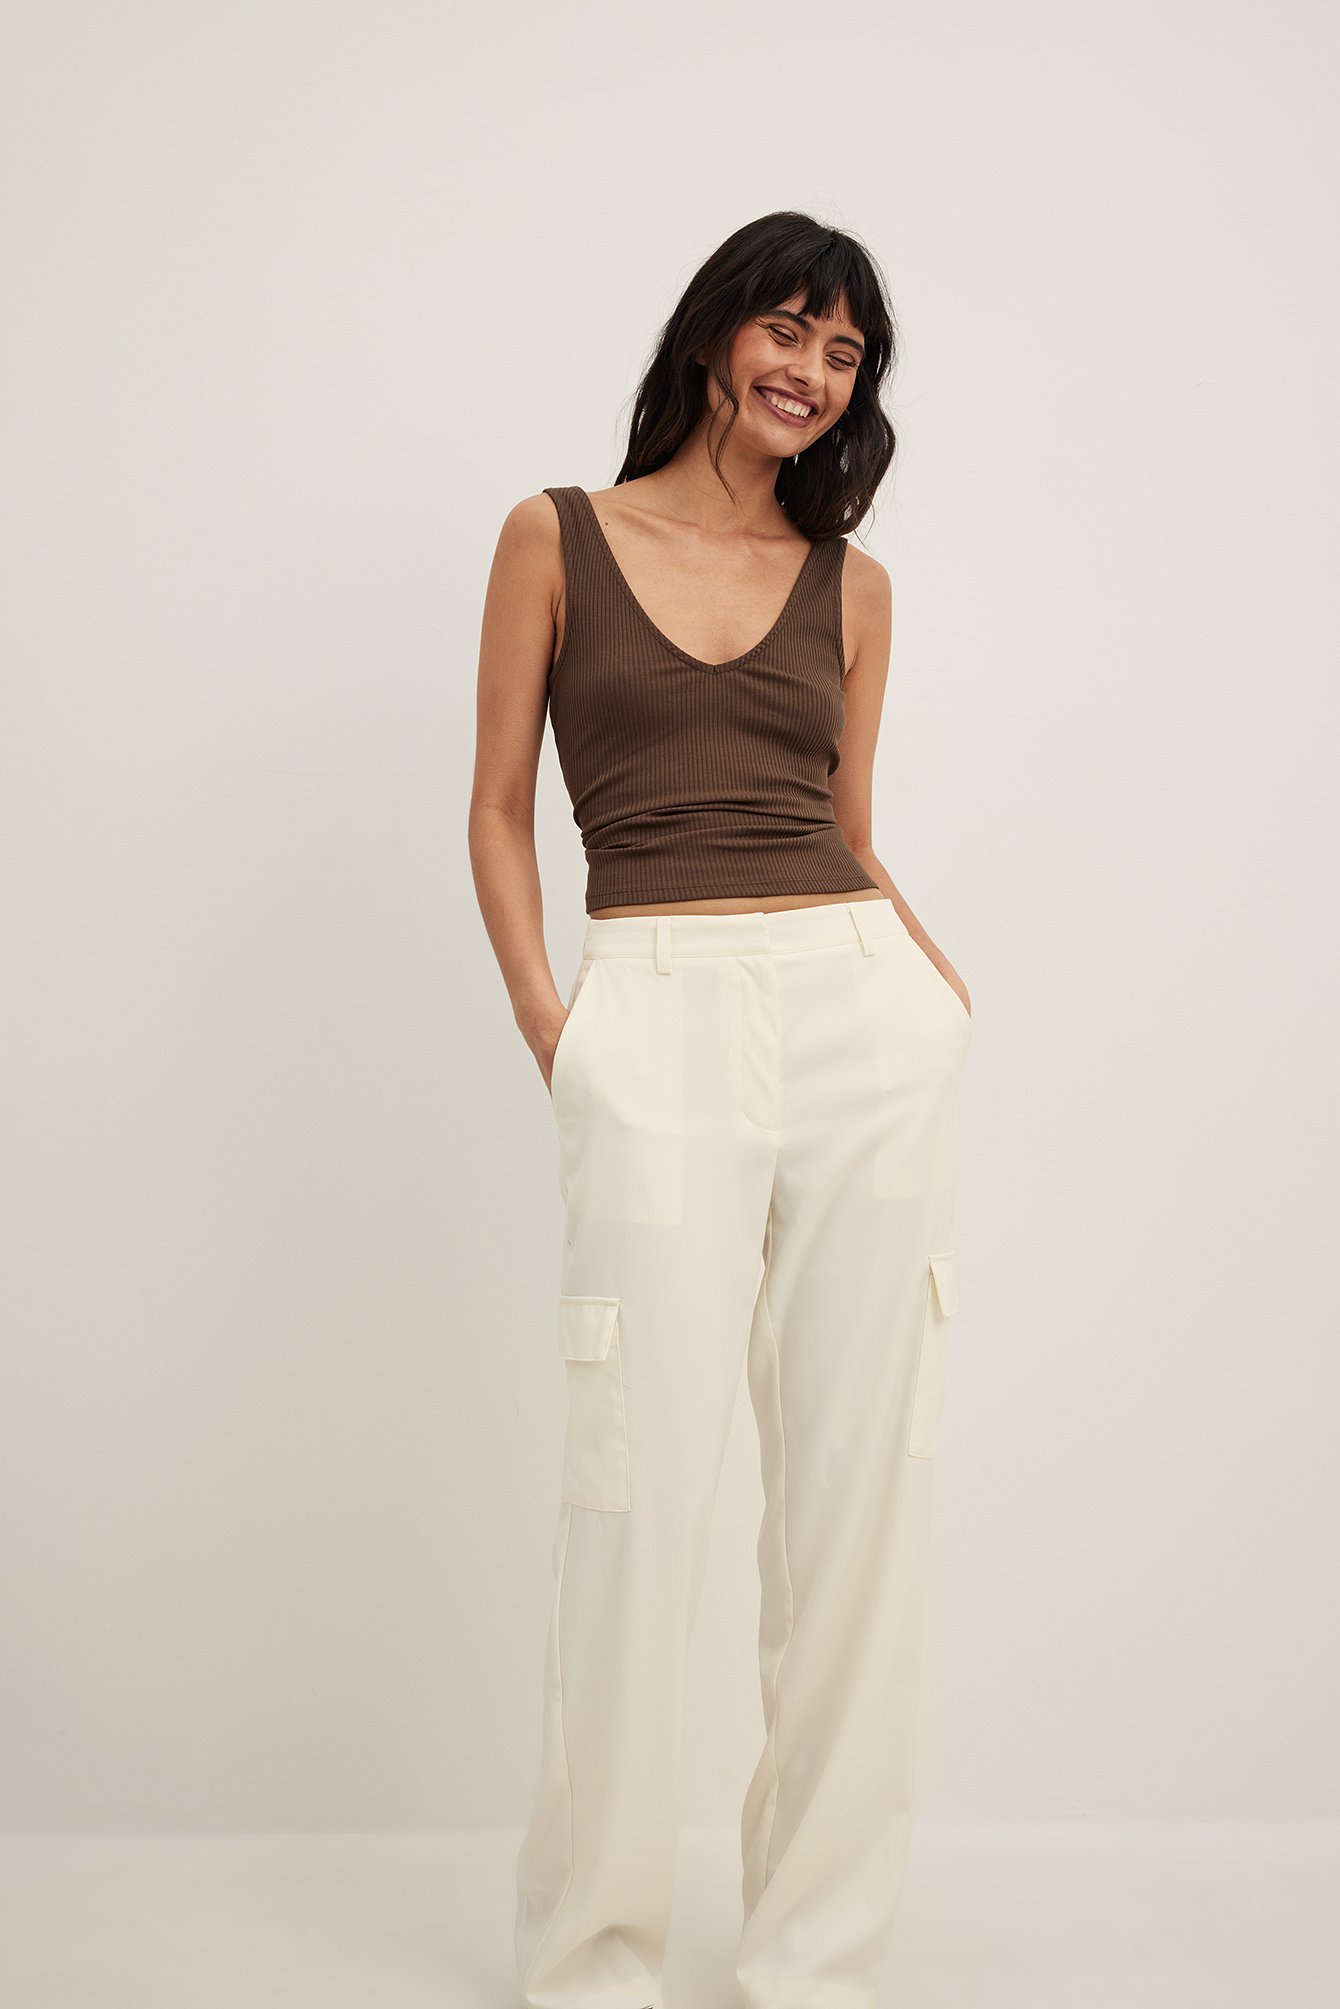 Buy Cream Trousers  Pants for Women by Broadstar Online  Ajiocom